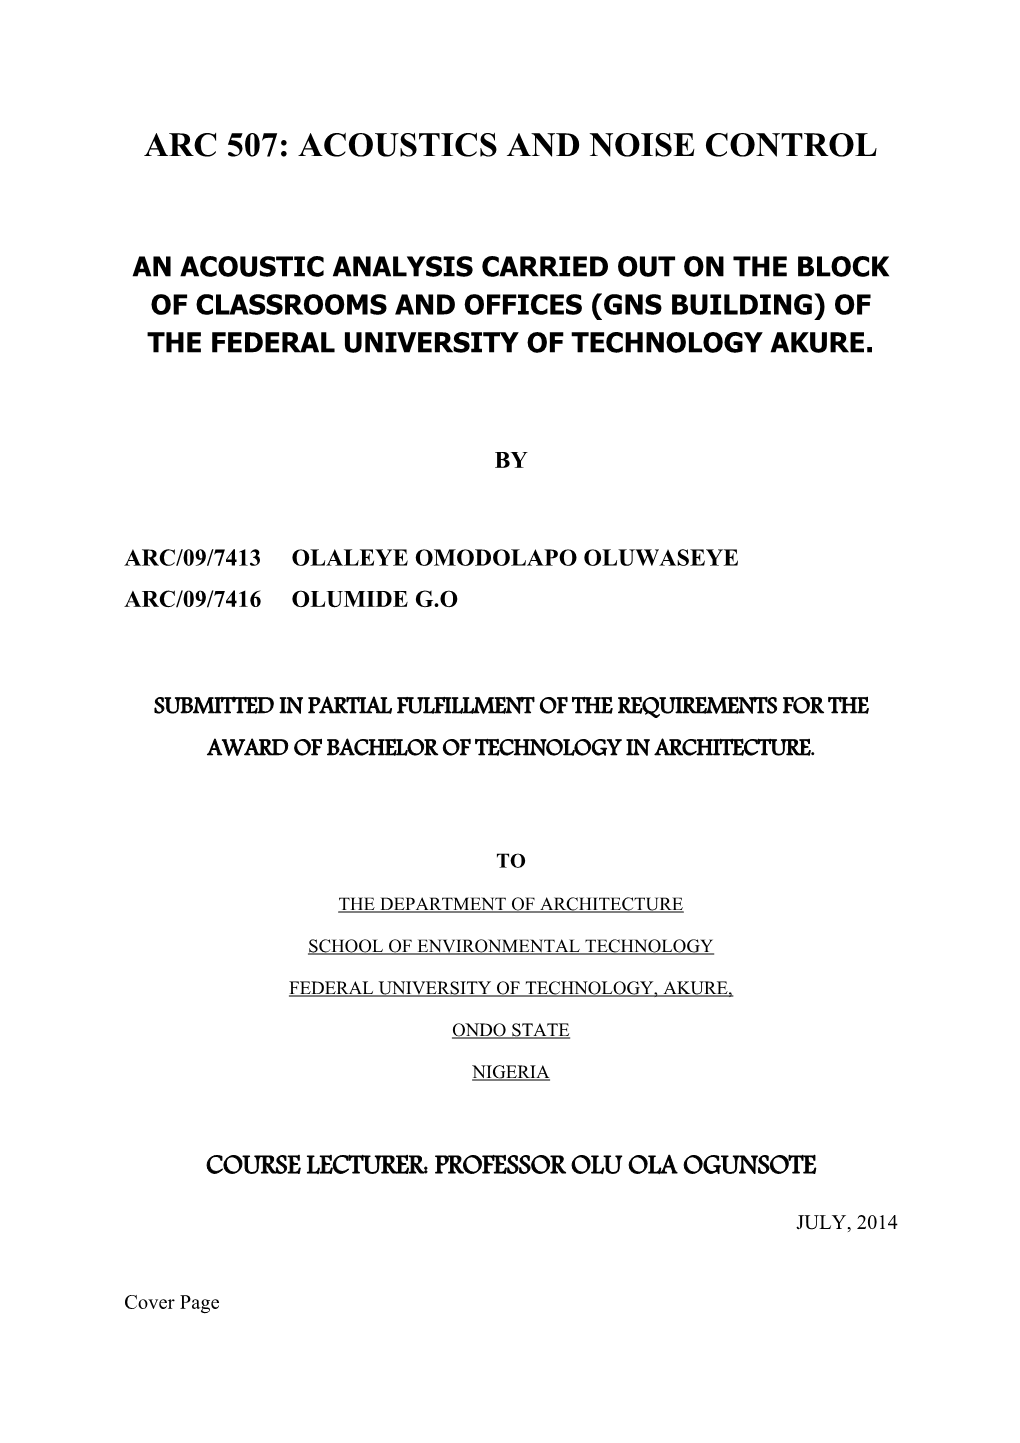 Arc 507: Acoustics and Noise Control